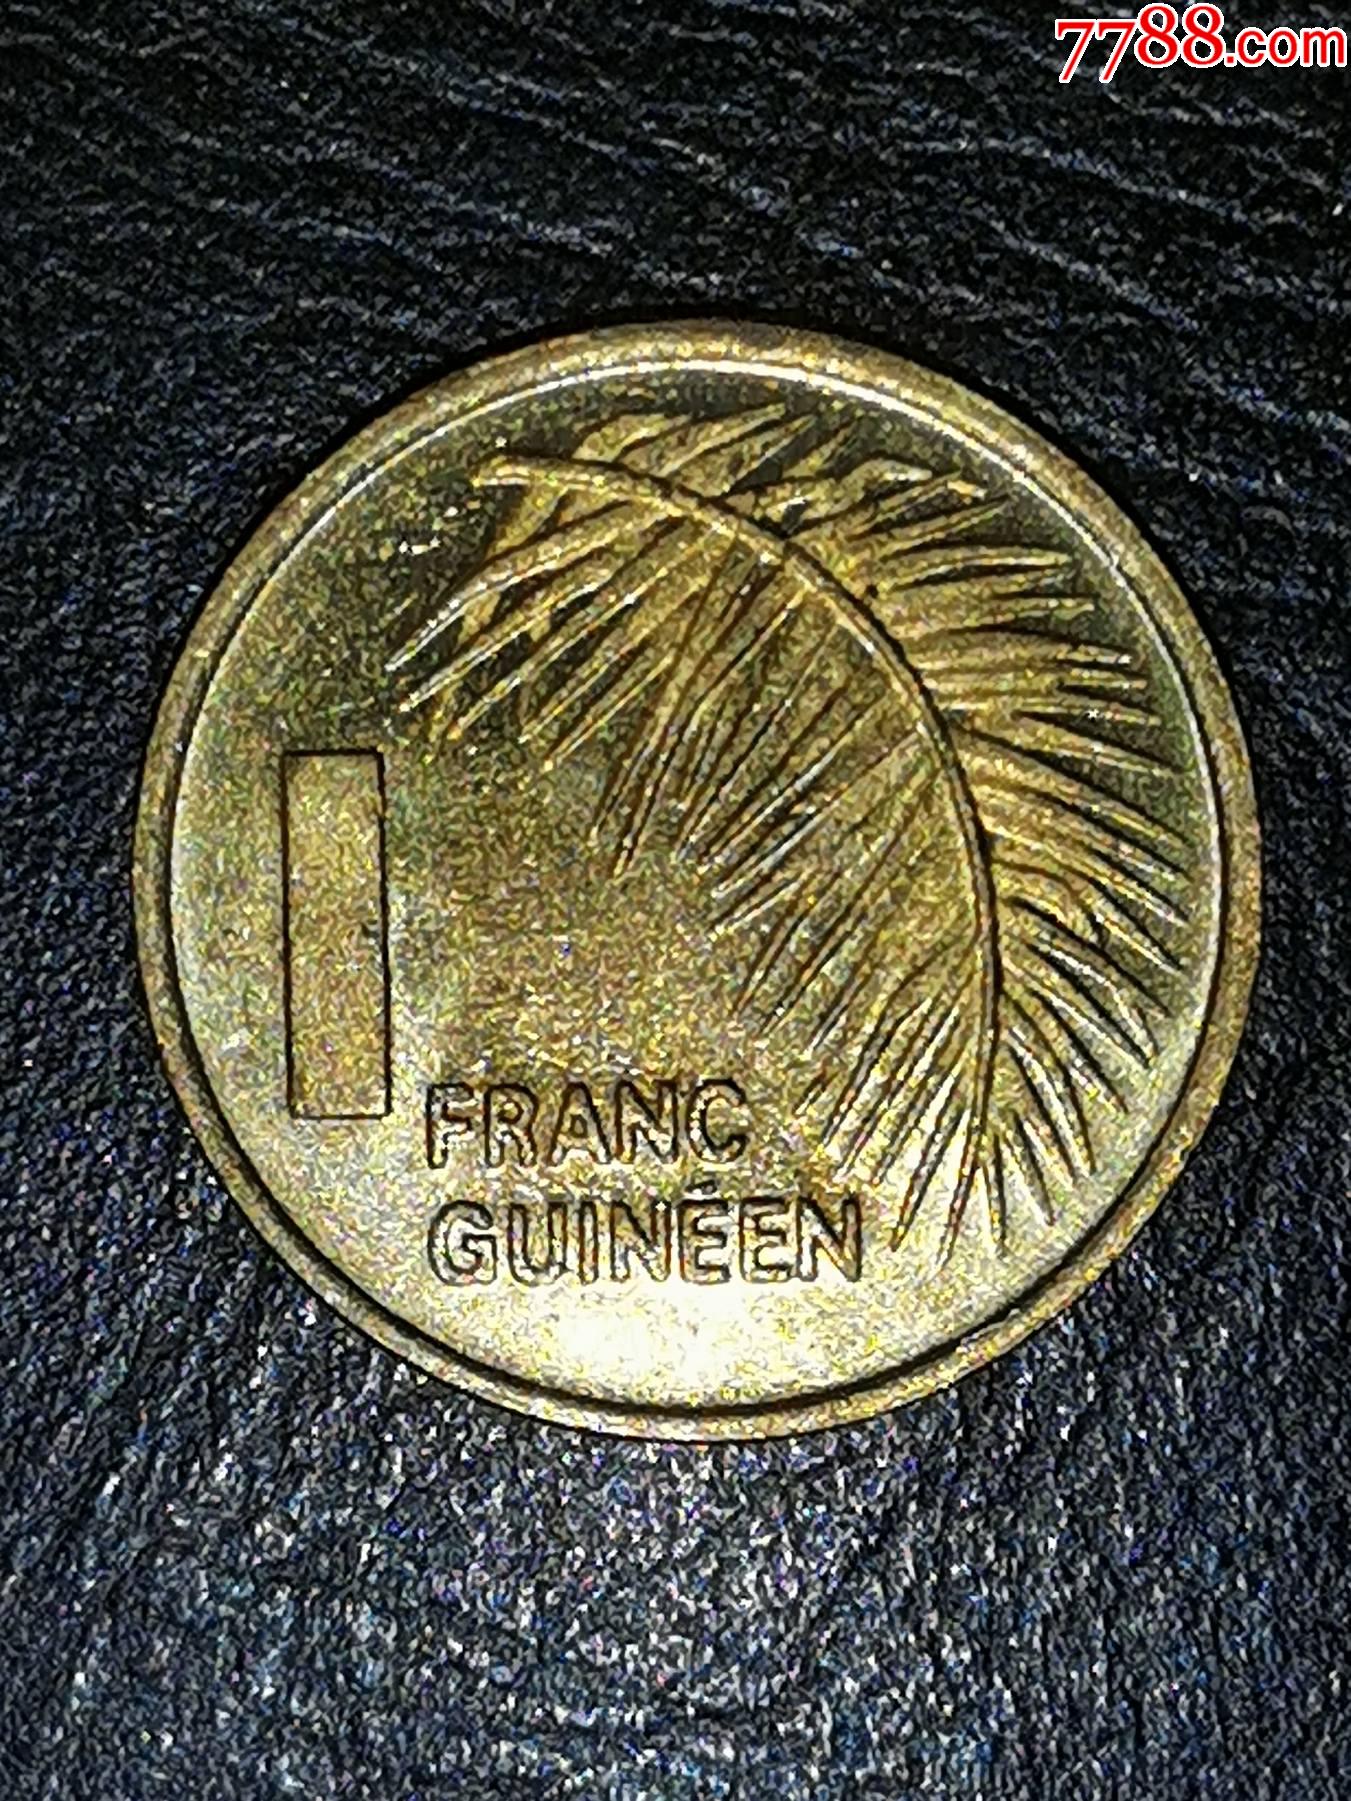 开学了，来涨点知识吧:几内亚法郎全套纸币真面目 - 哔哩哔哩